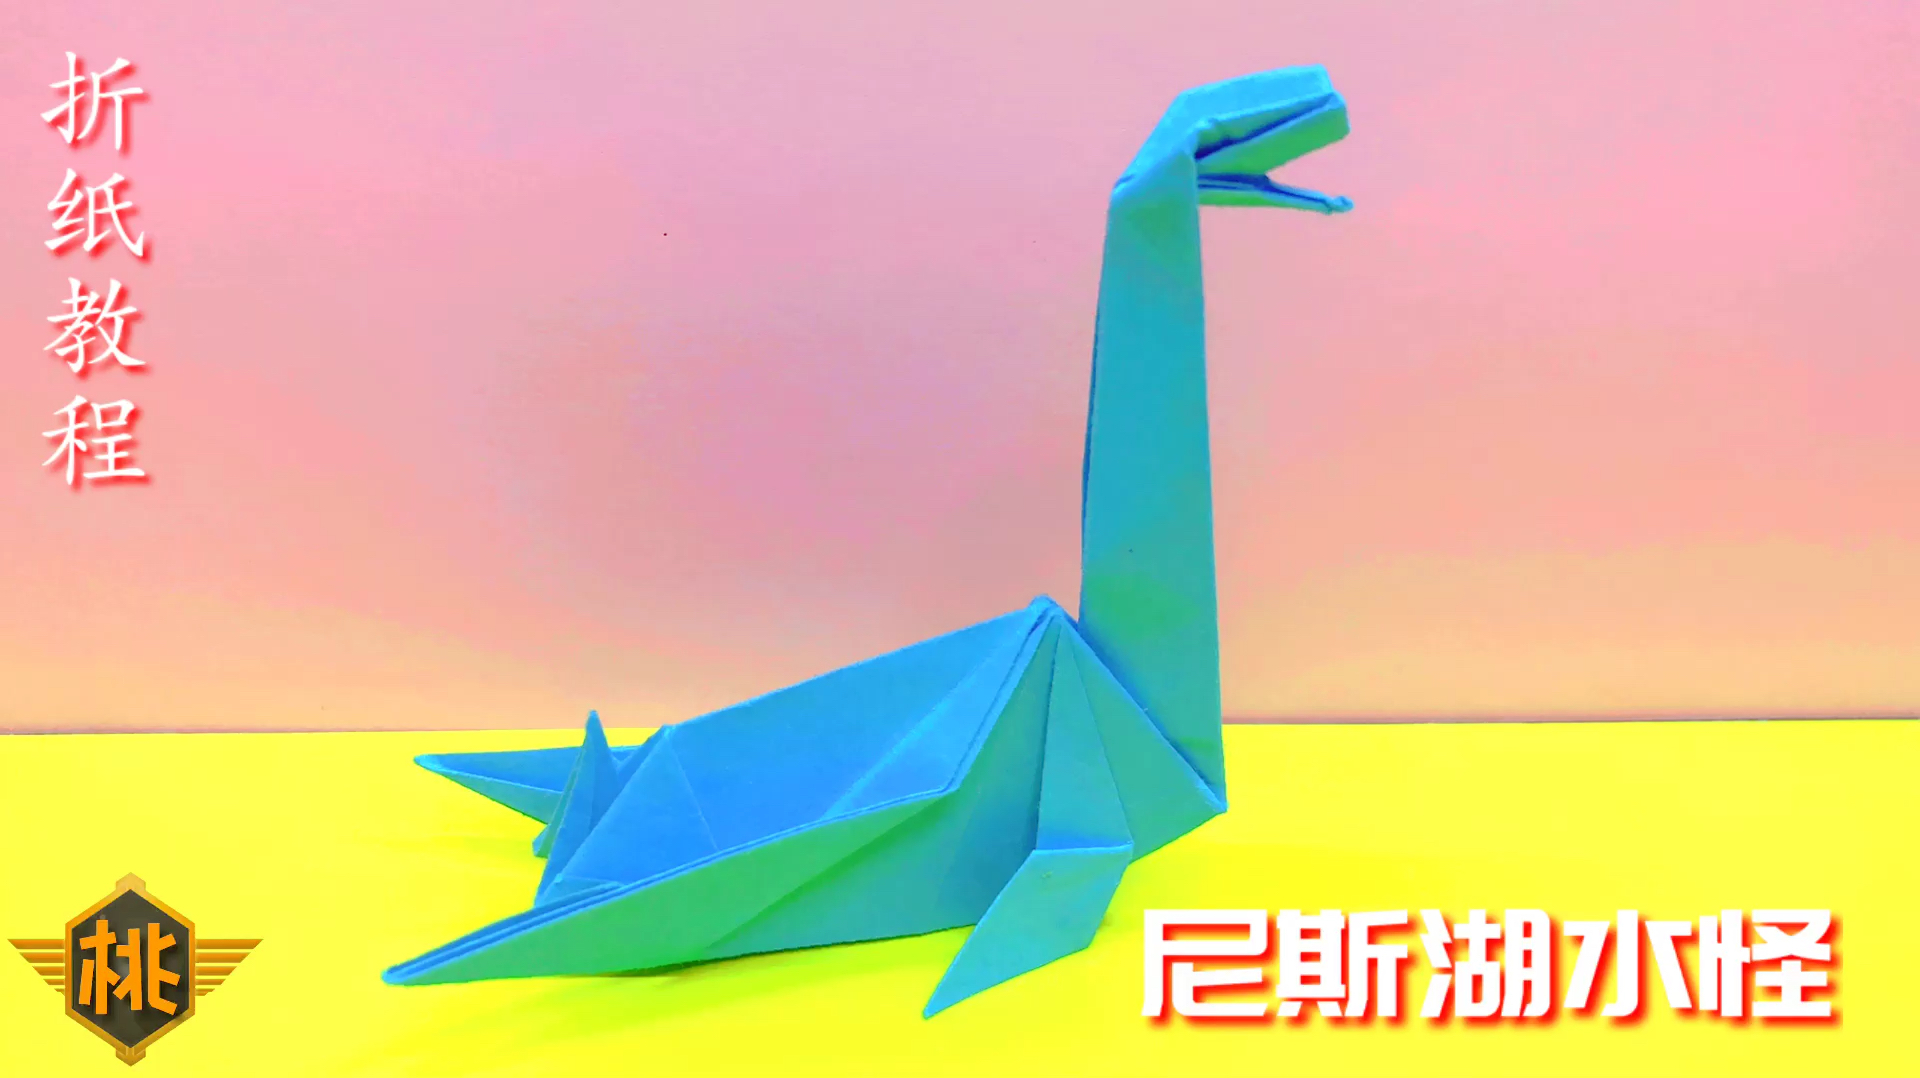 好看视频-折纸教程:盗暴龙,超逼真还原,不知道你有没有听过这个恐龙